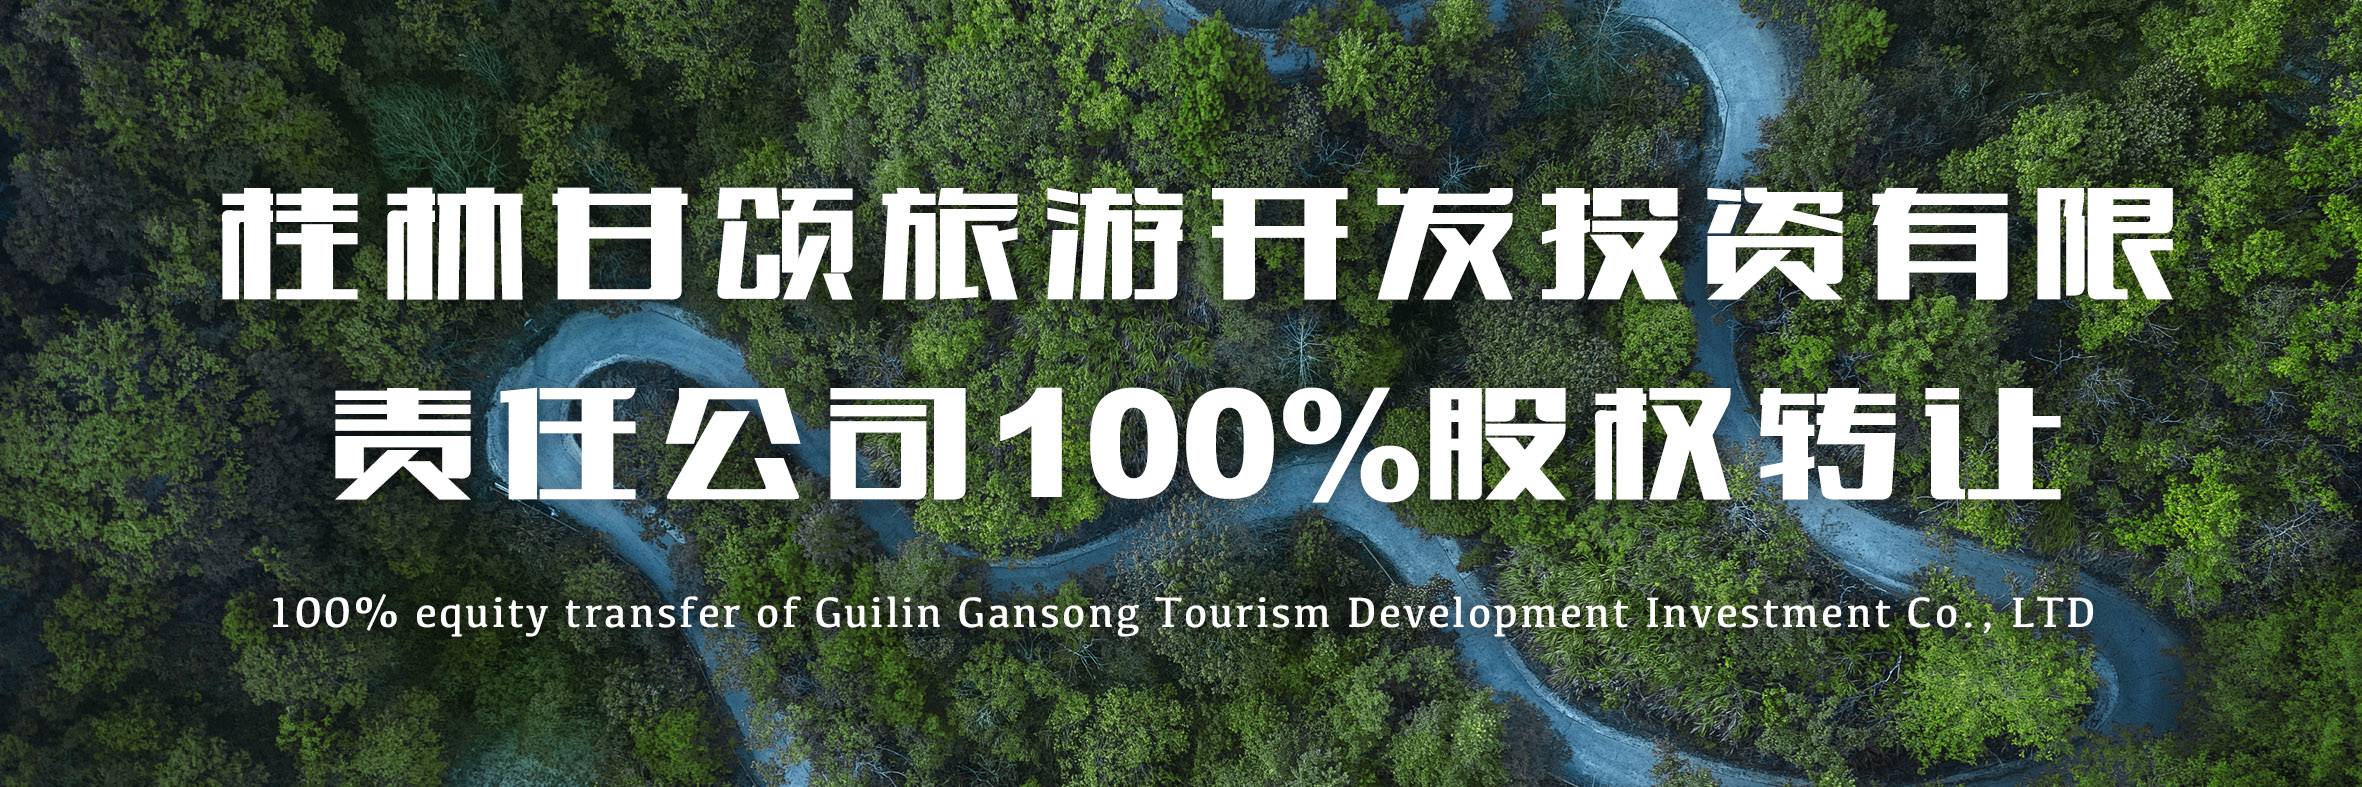 桂林甘颂旅游开发投资有限责任公司100%股权转让